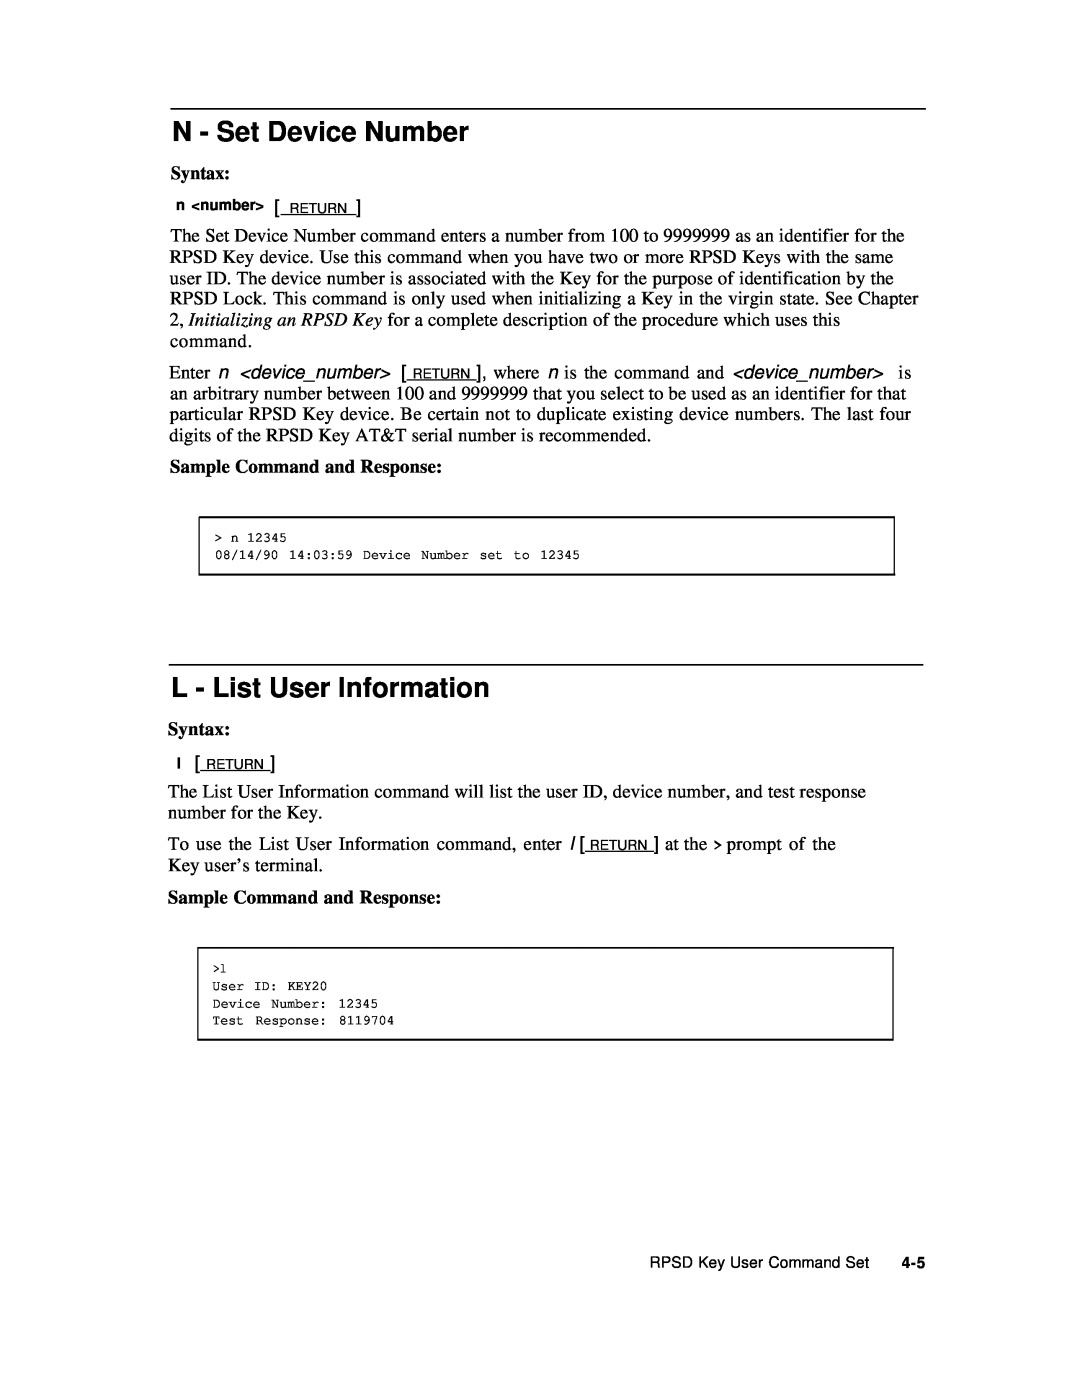 AT&T Remote Port Security Device user manual N - Set Device Number, L - List User Information, n number RETURN 